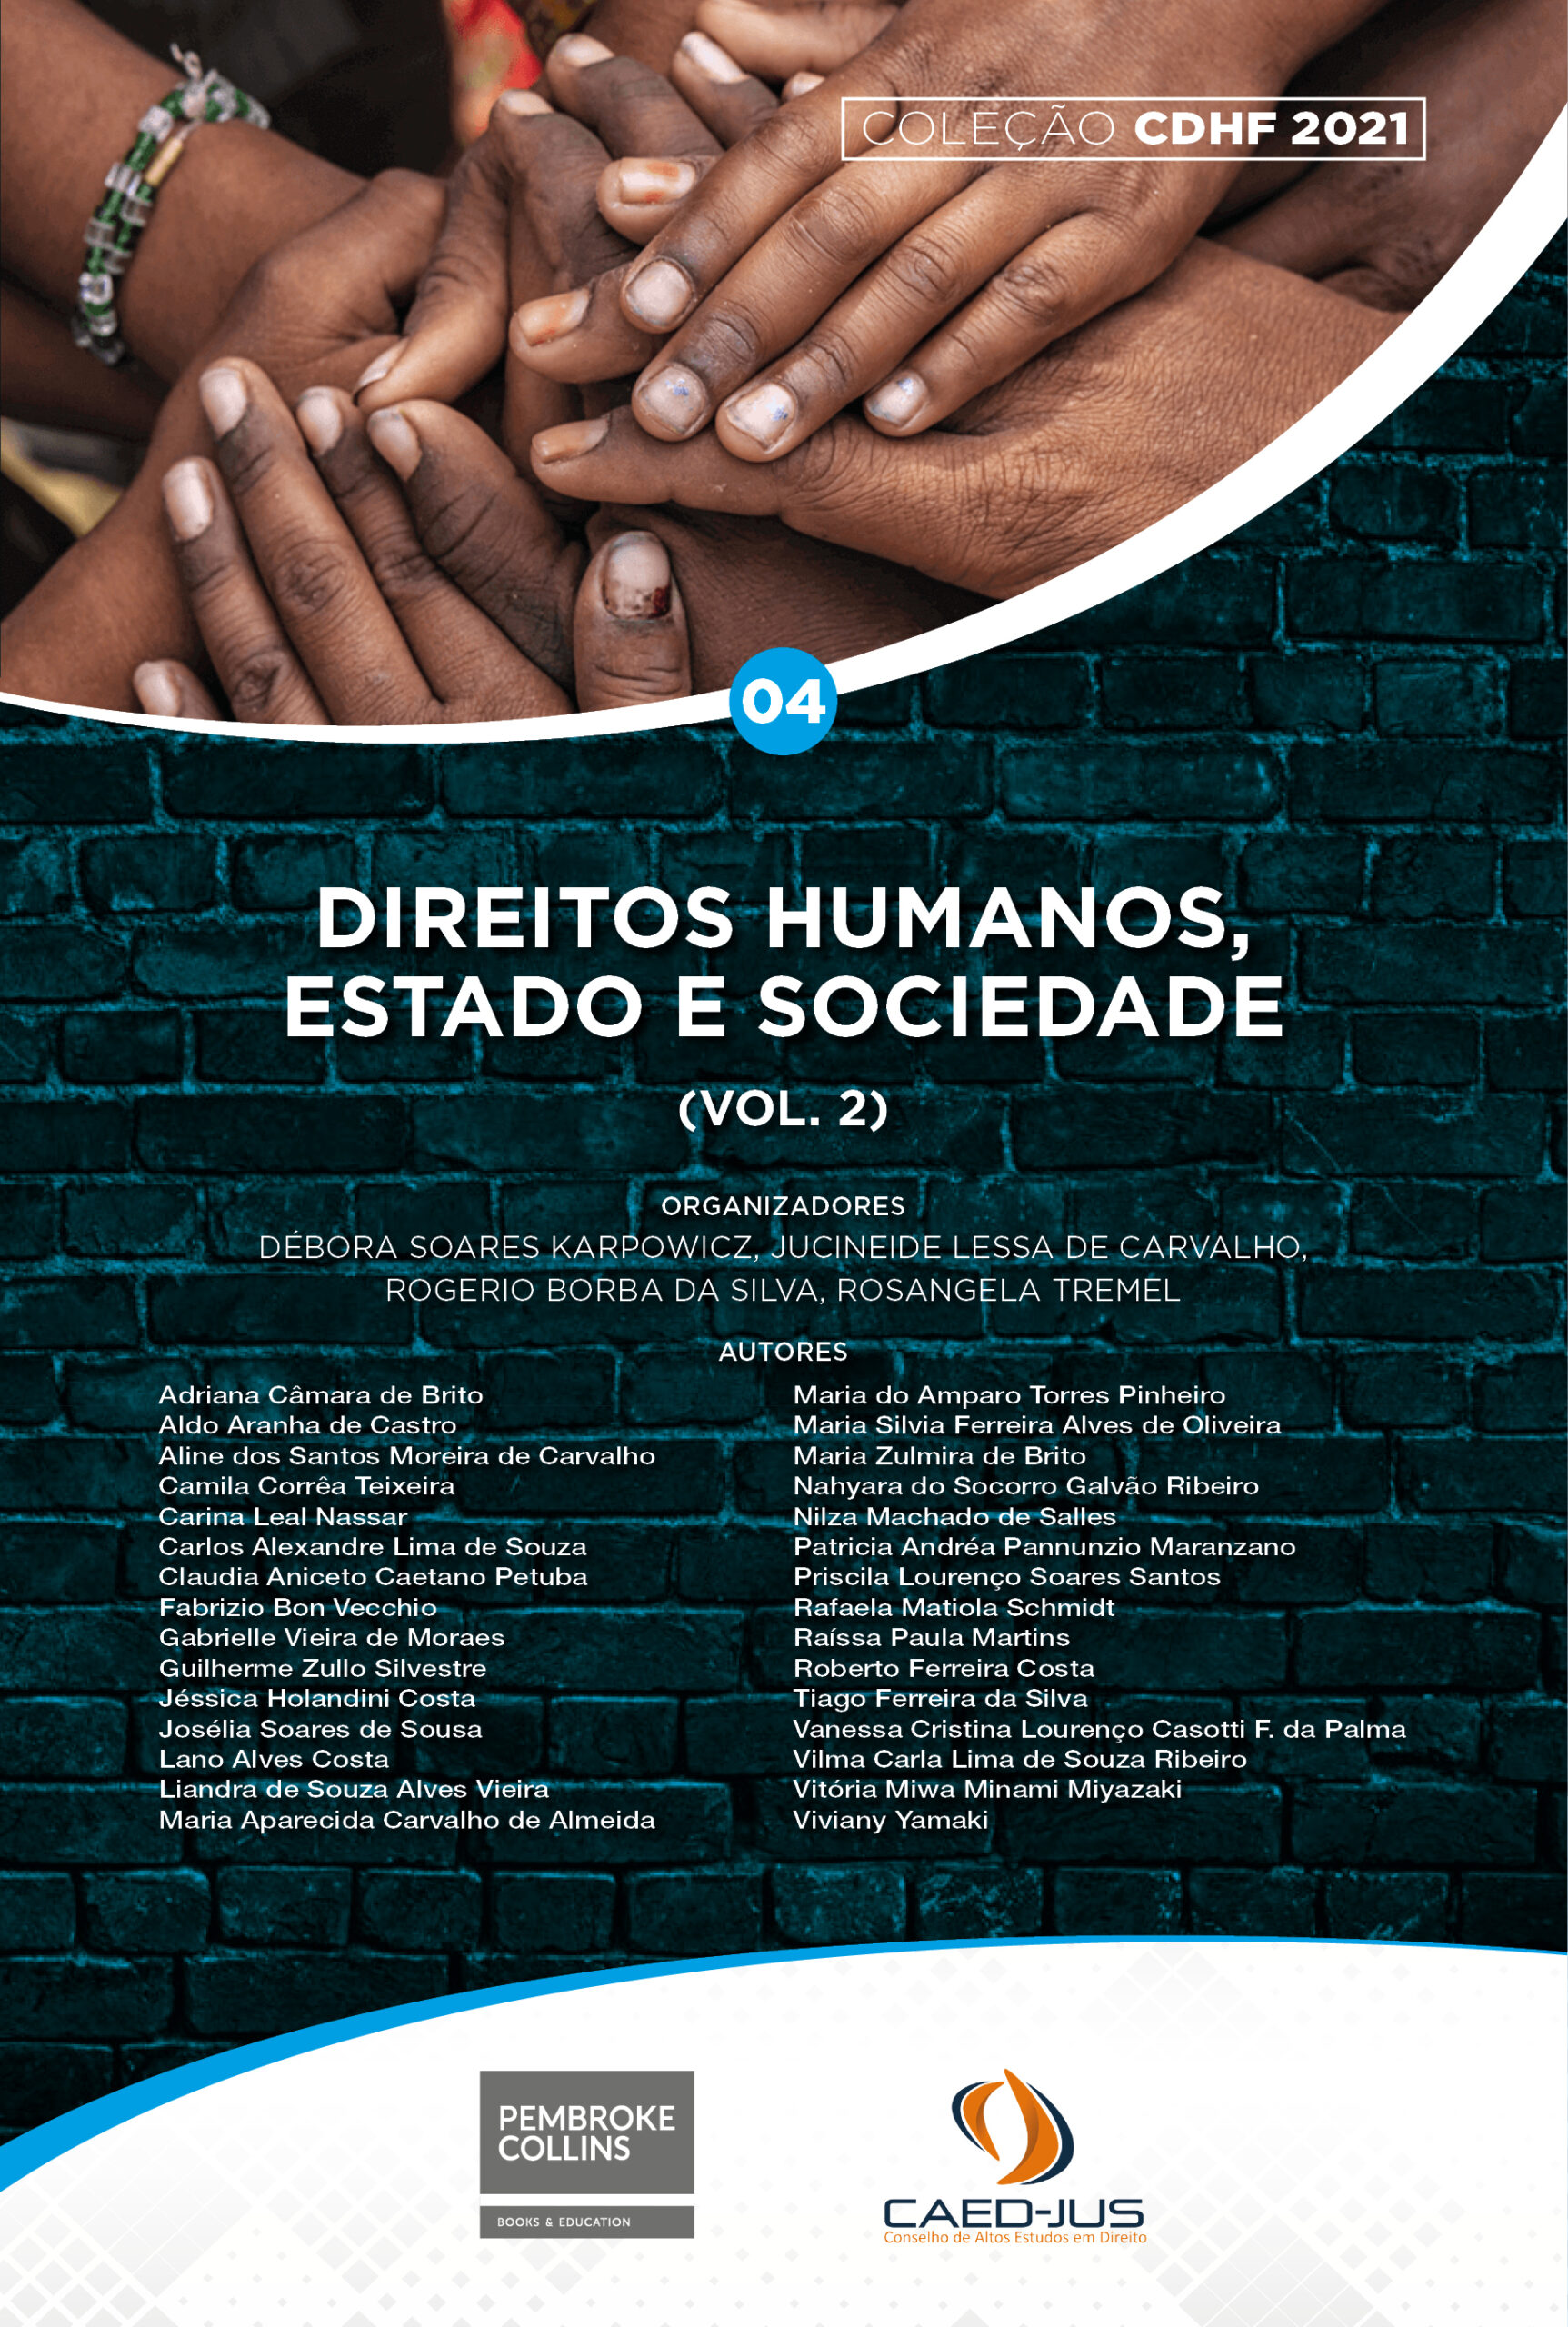 CDHF2021-04-Direitos-humanos-estado-e-sociedade-vol2